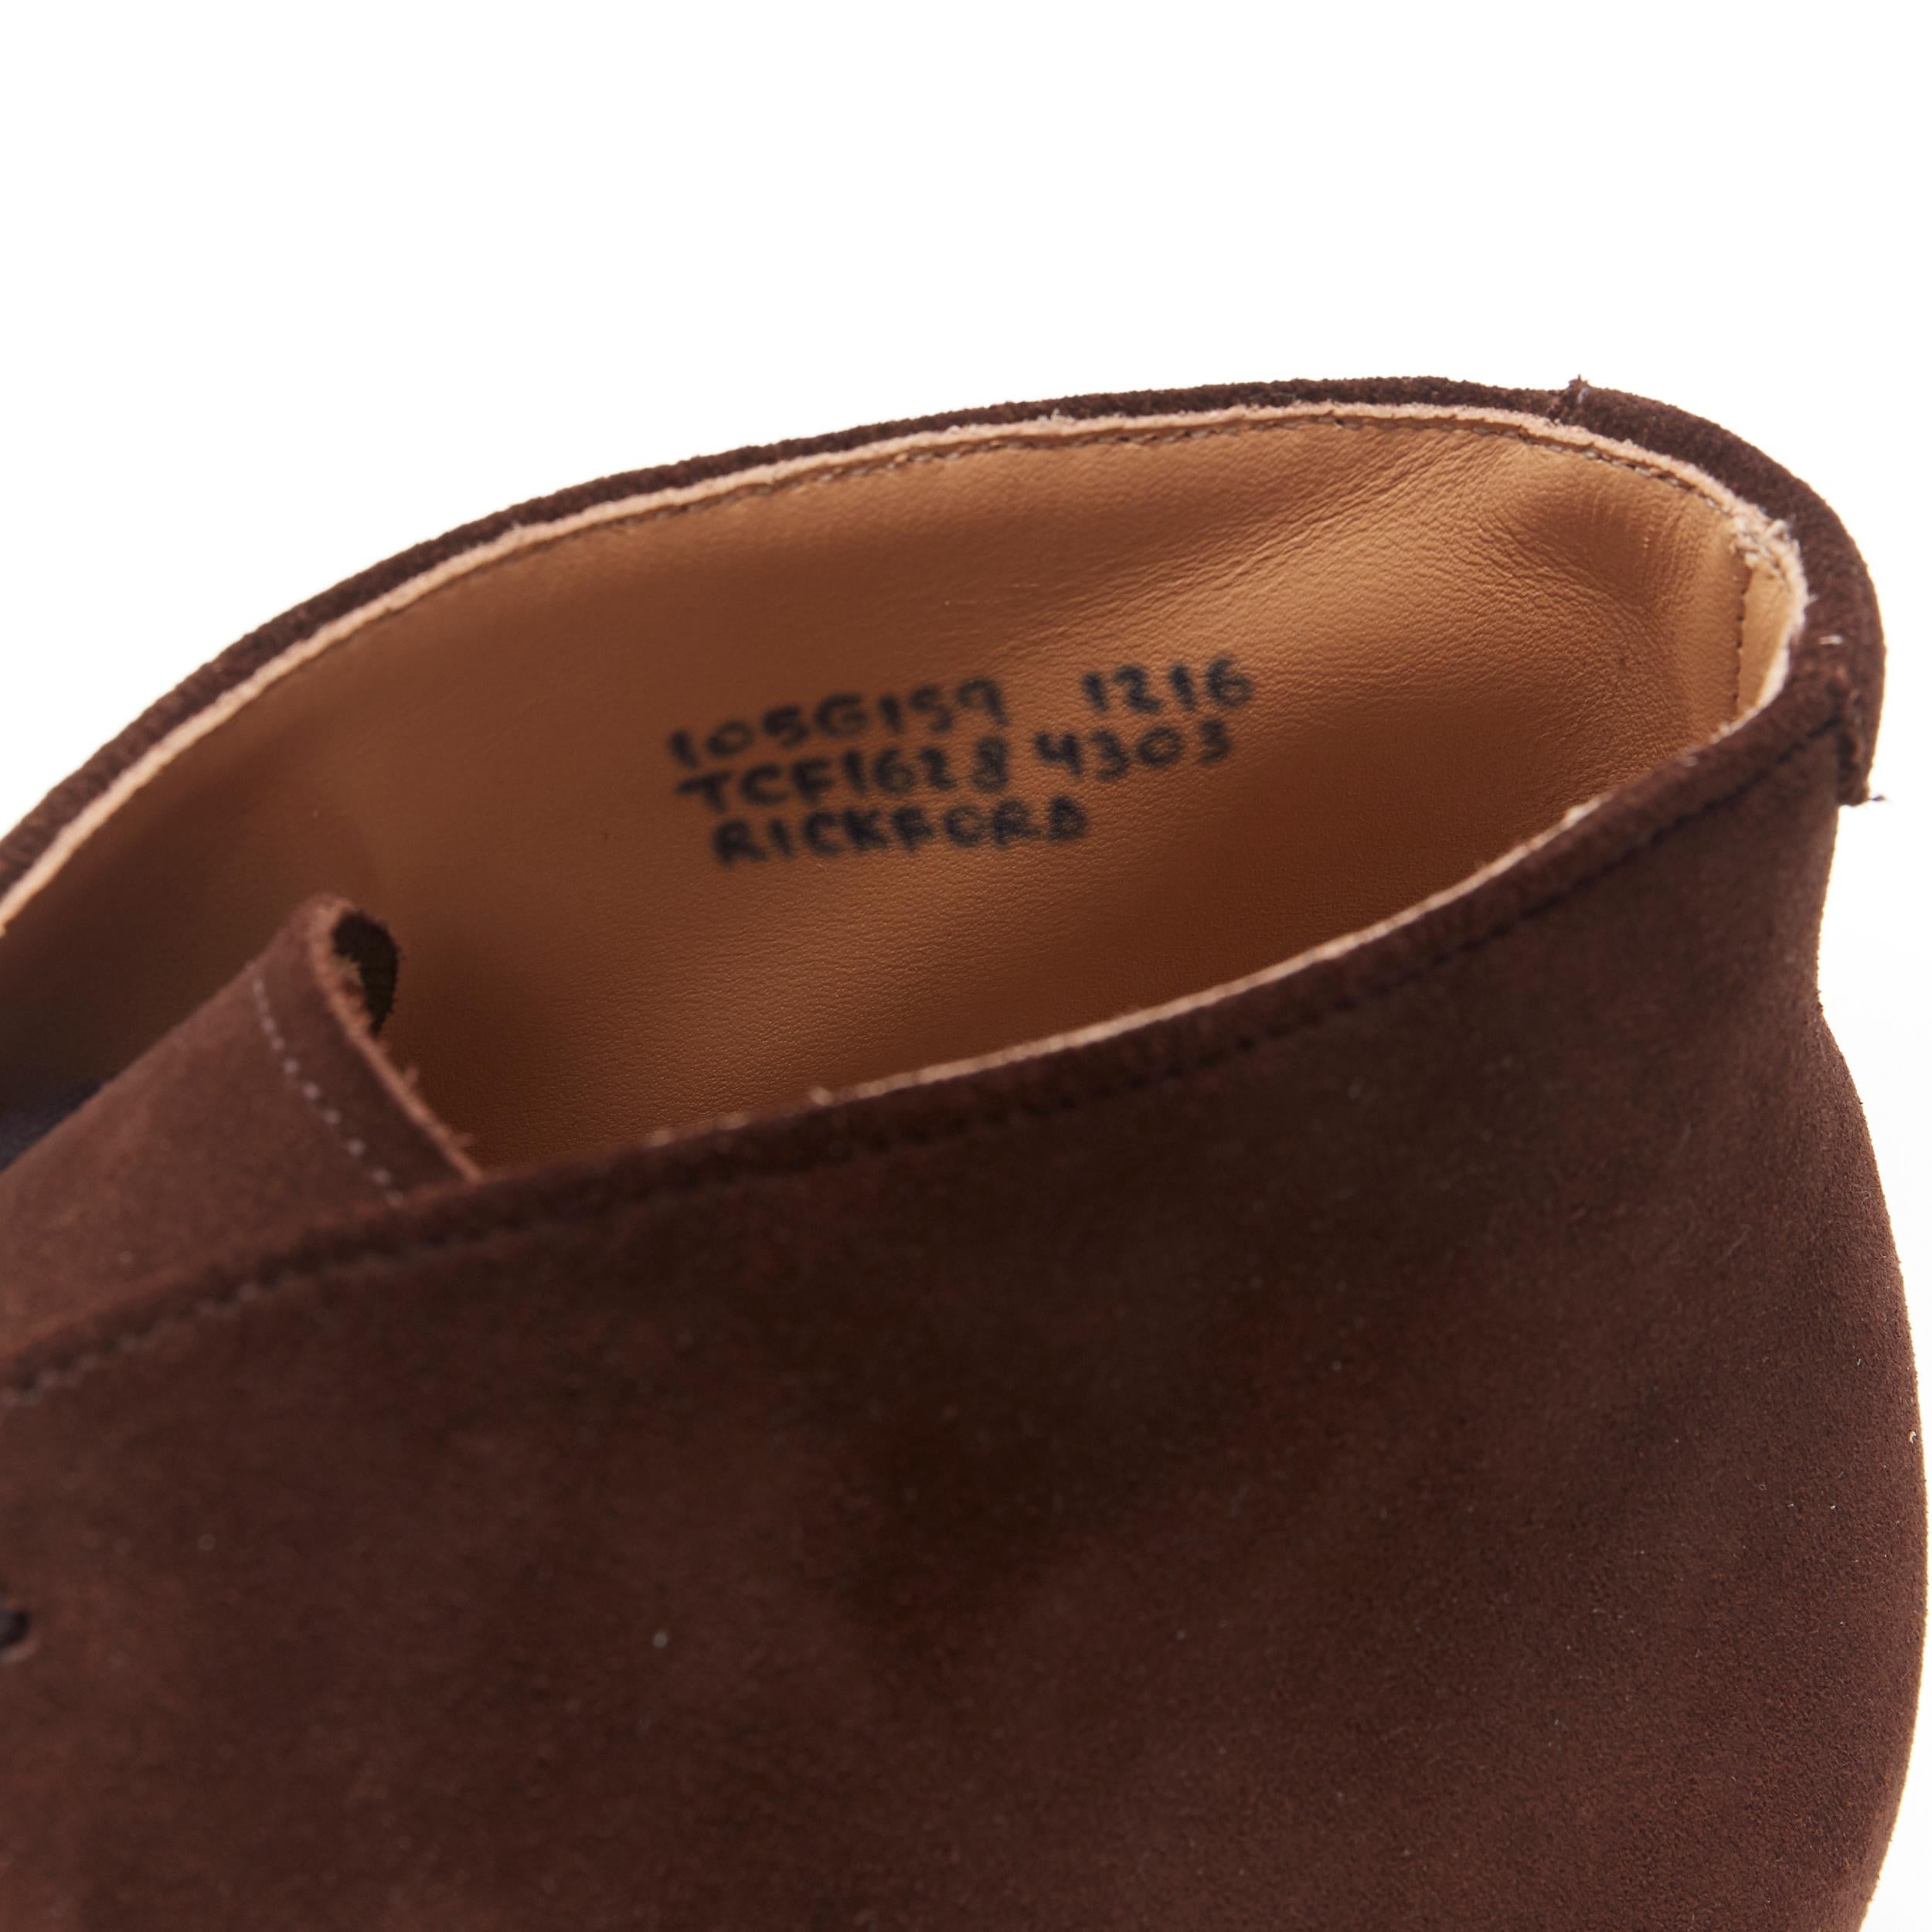 new CHURCH'S Rickford Superbuck brown suede chukka desert boots UK10.5 EU44.5 5